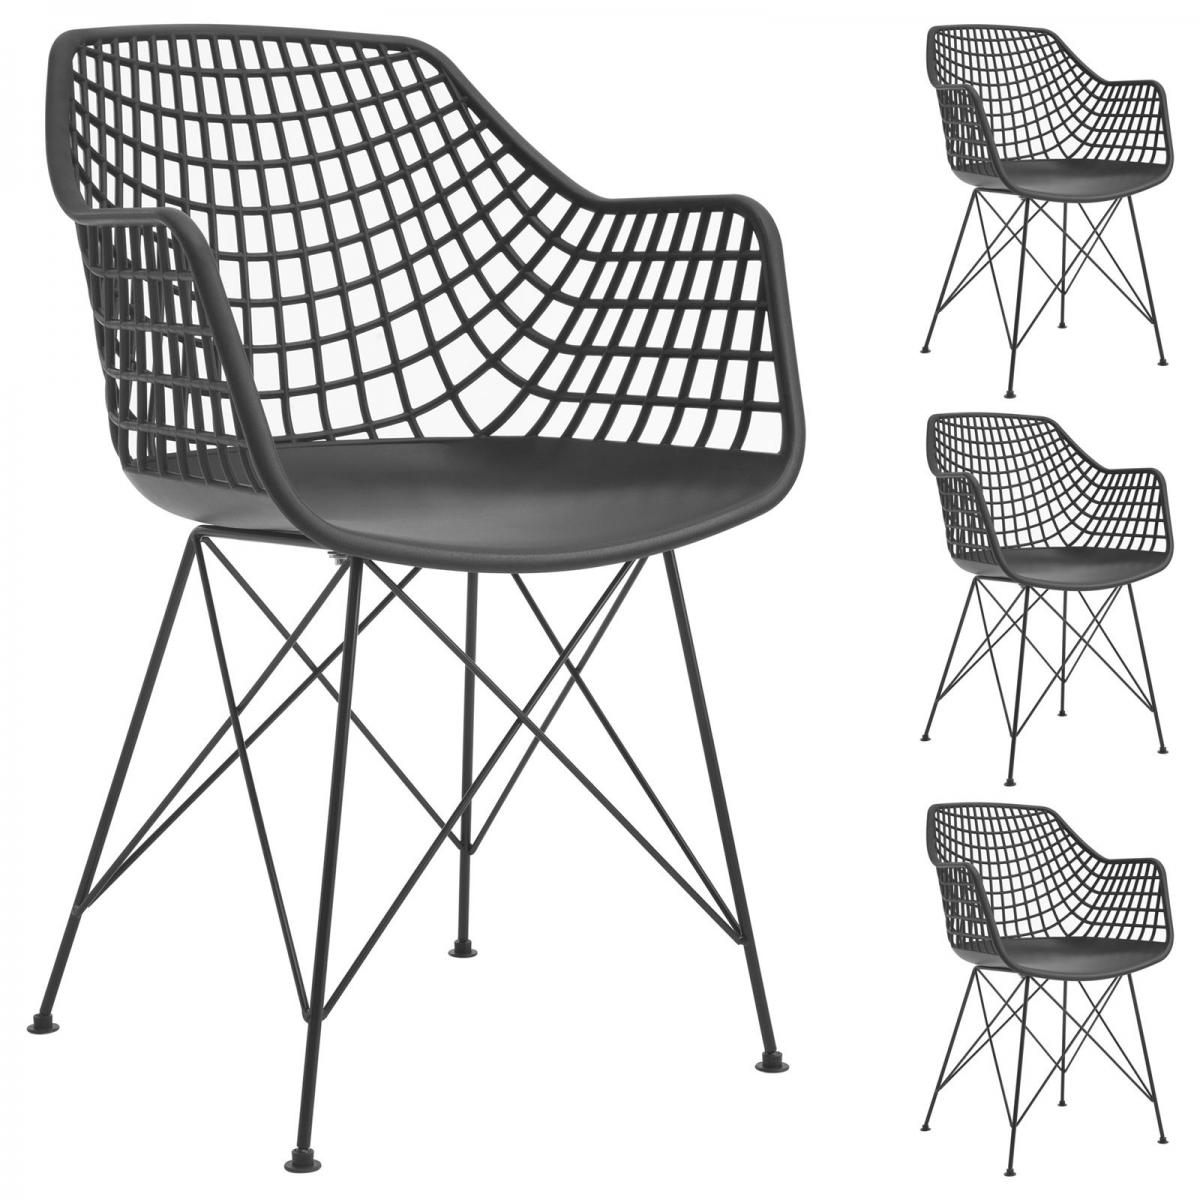 Idimex - Lot de 4 chaises ALICANTE, en plastique noir - Chaises